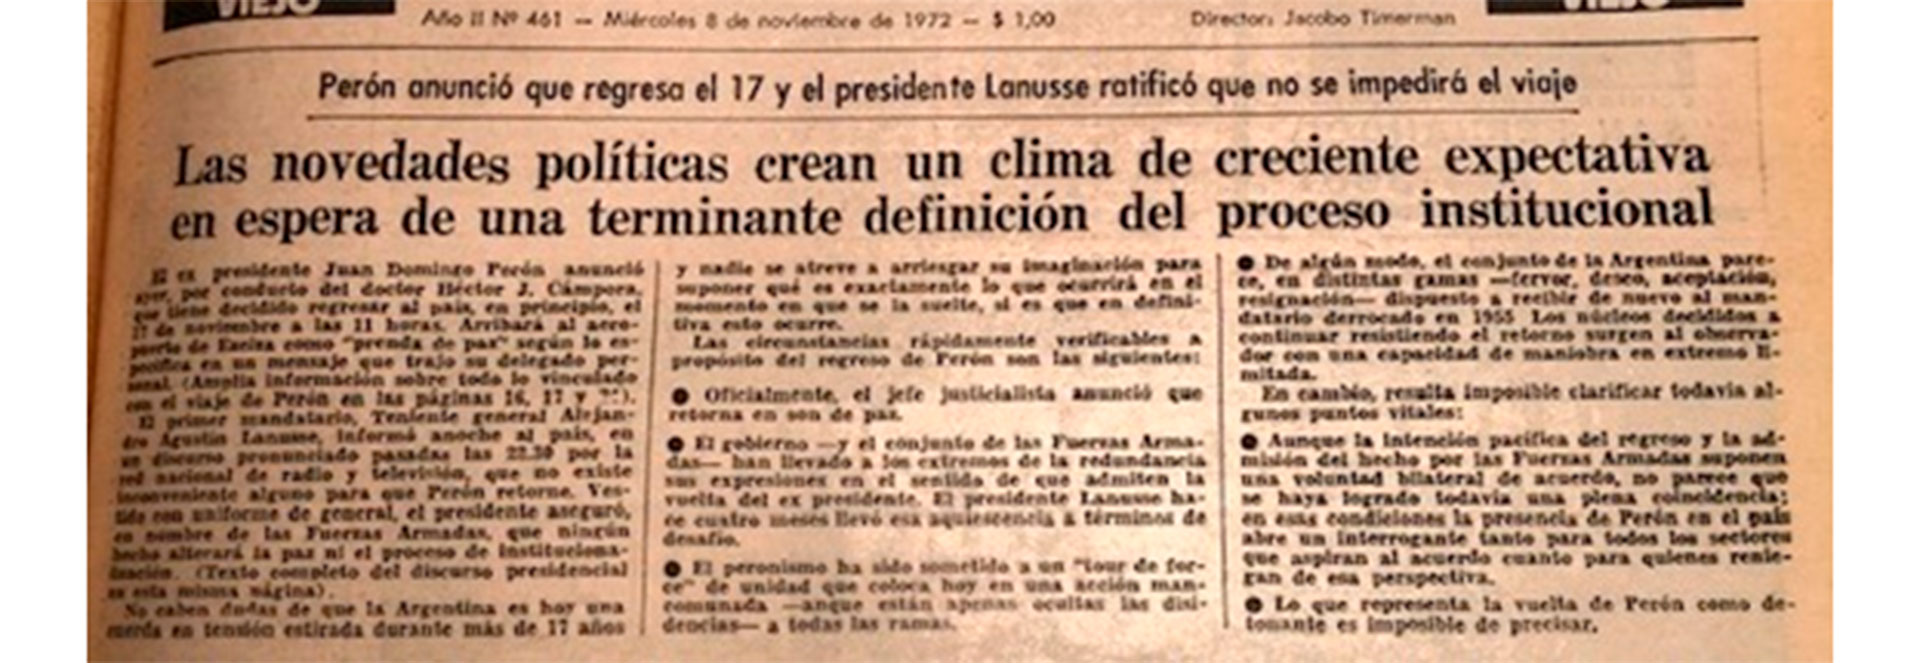 Título de tapa de La Opinión, 8 de noviembre de 1972